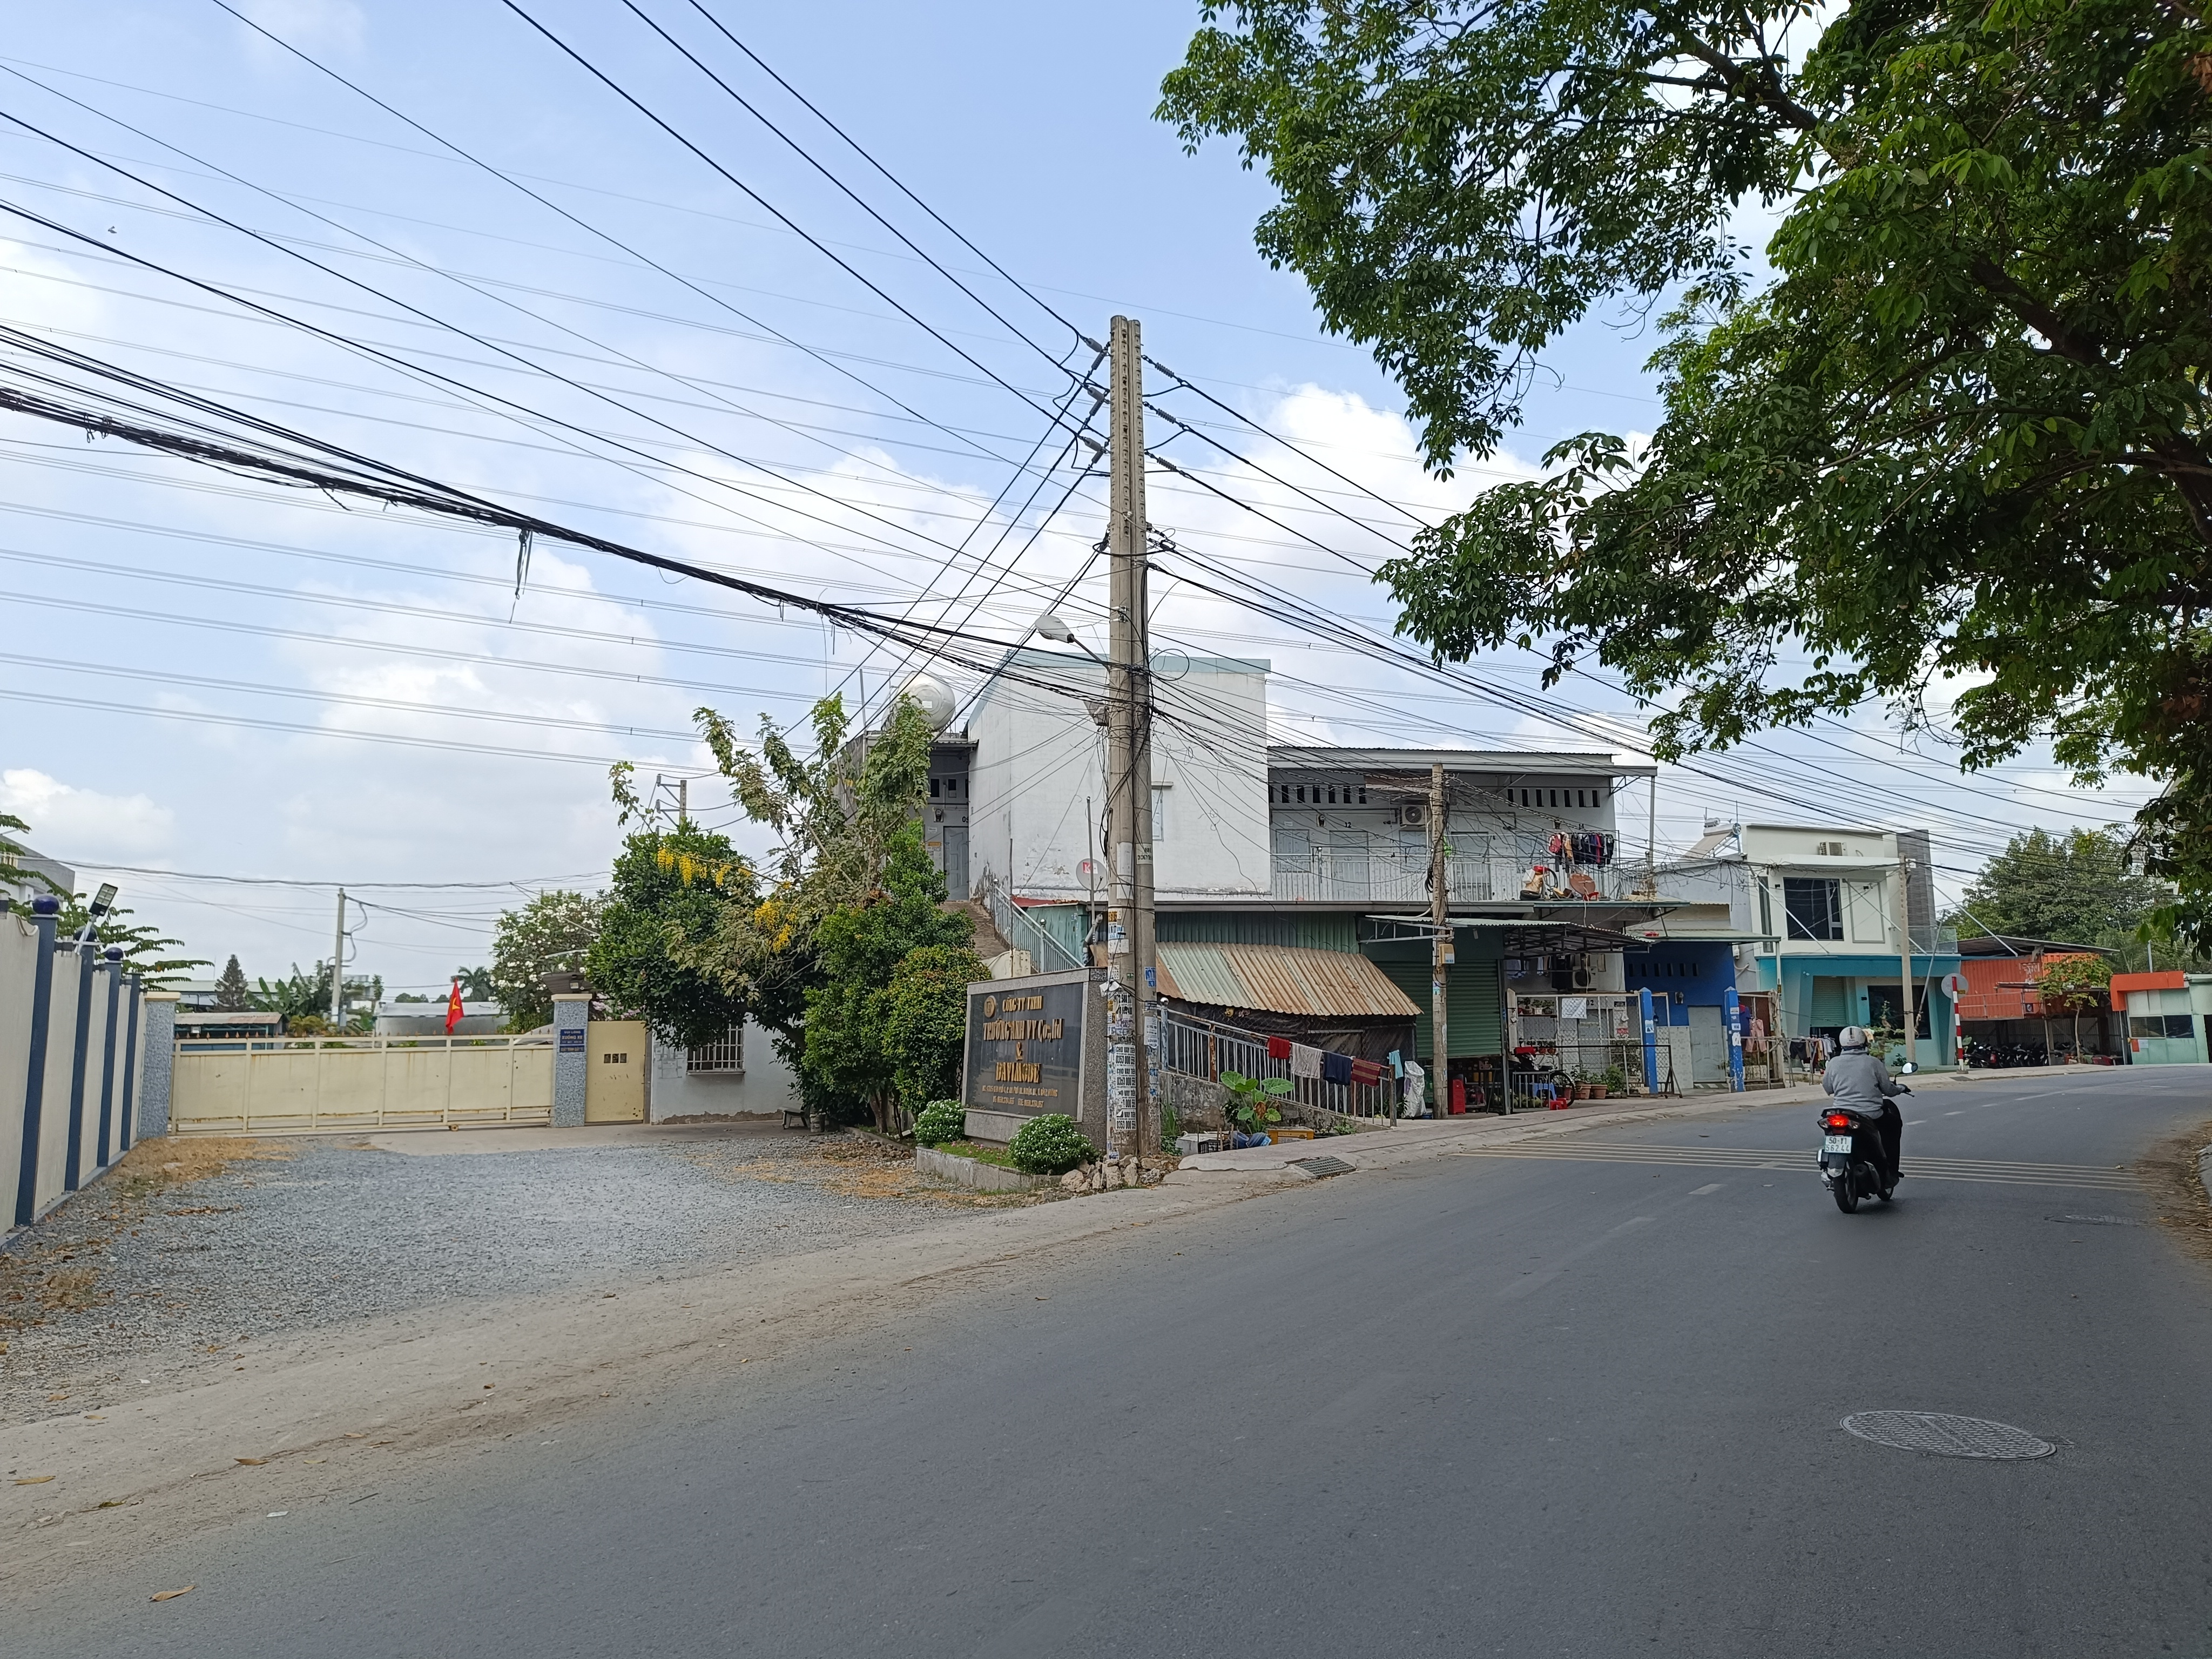  Bán 6100m đất ở mặt đường tại trung tâm Tp. Thuận An, Bình Dương giá 65 Tỷ đồng